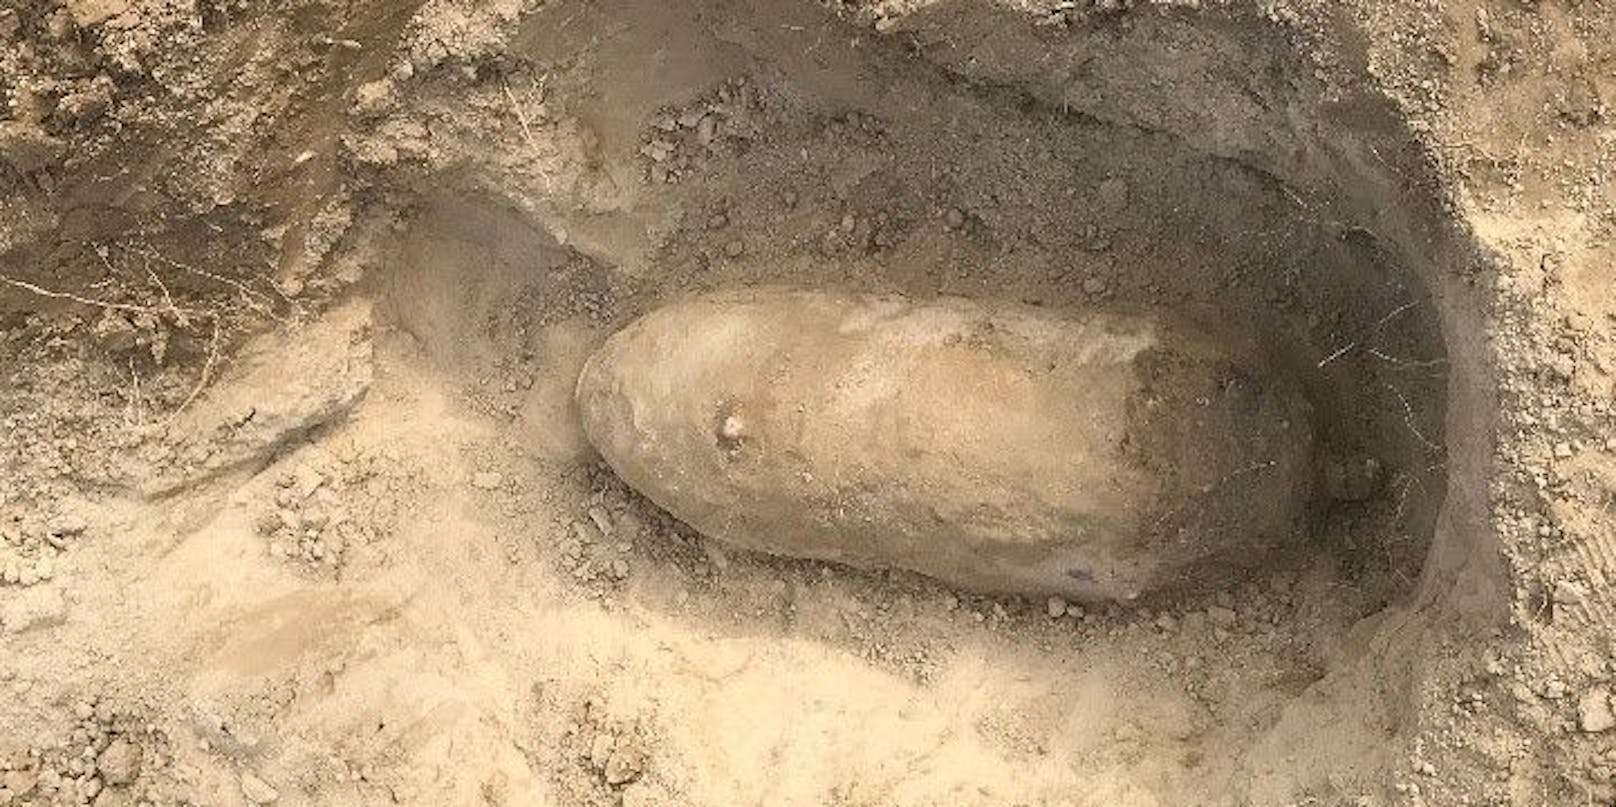 Diese 100-Kilo-Fliegerbombe wurde von Arbeitern im Augarten gefunden